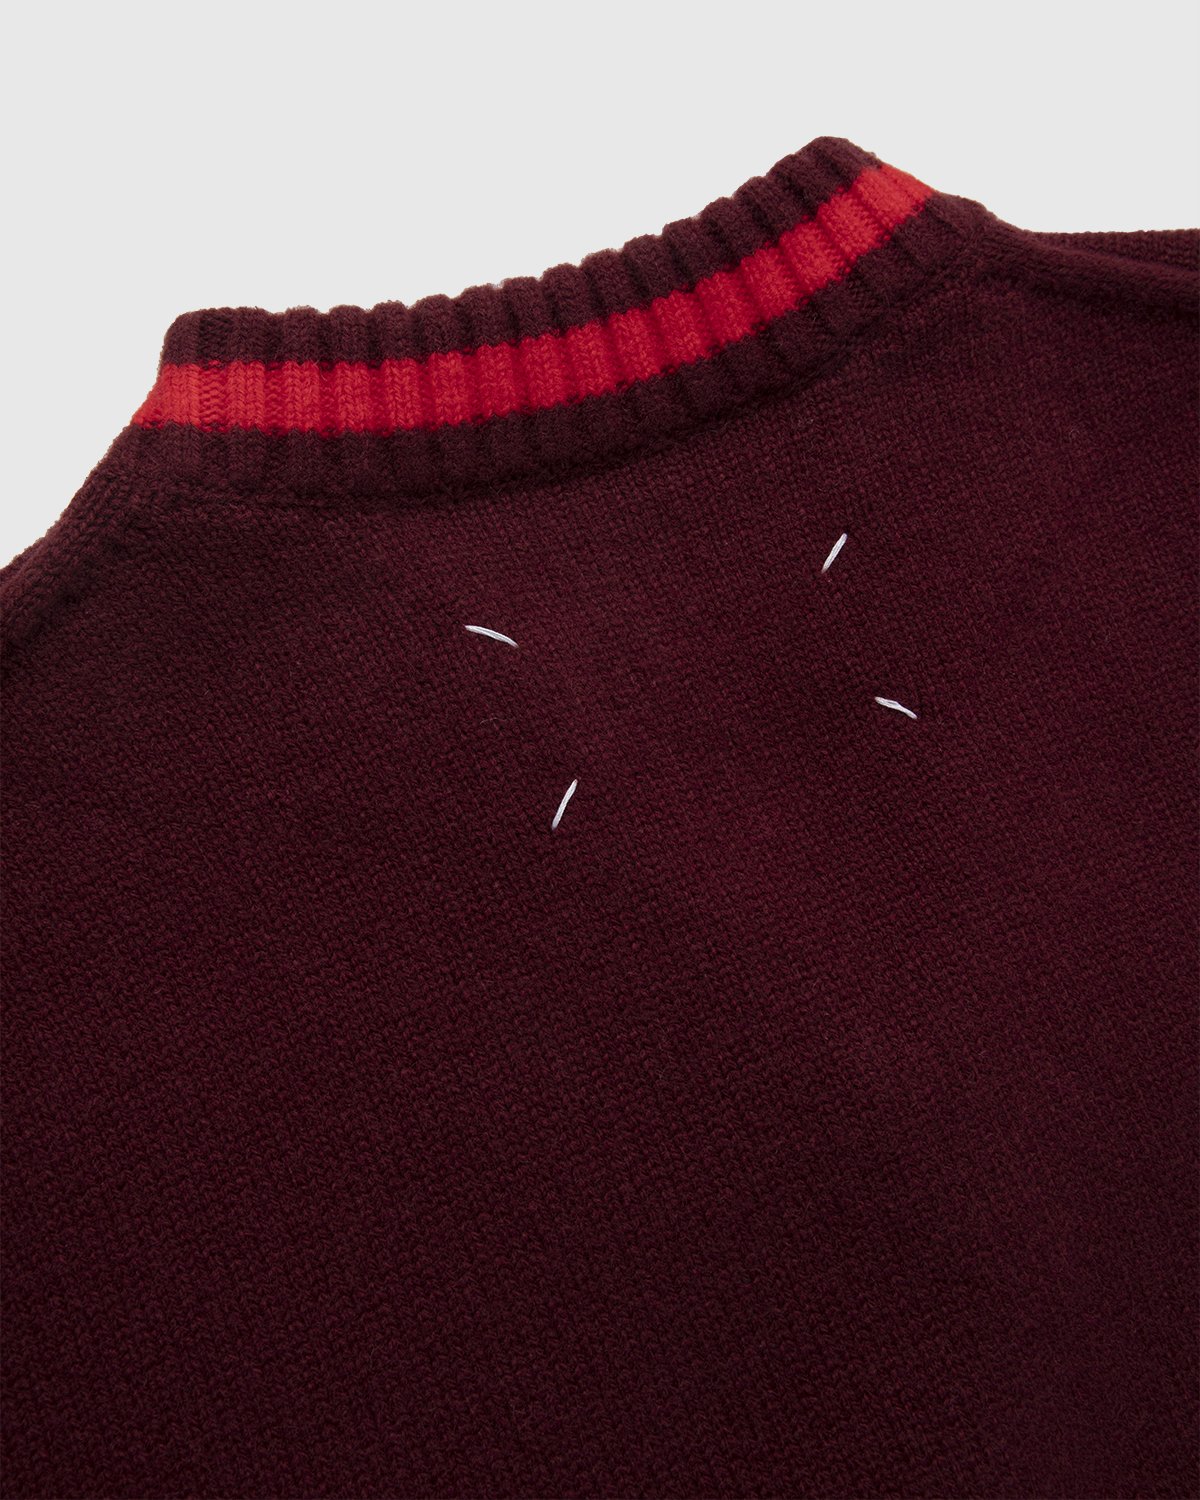 Maison Margiela - Oversized V Neck Knit Burgundy - Clothing - Red - Image 5